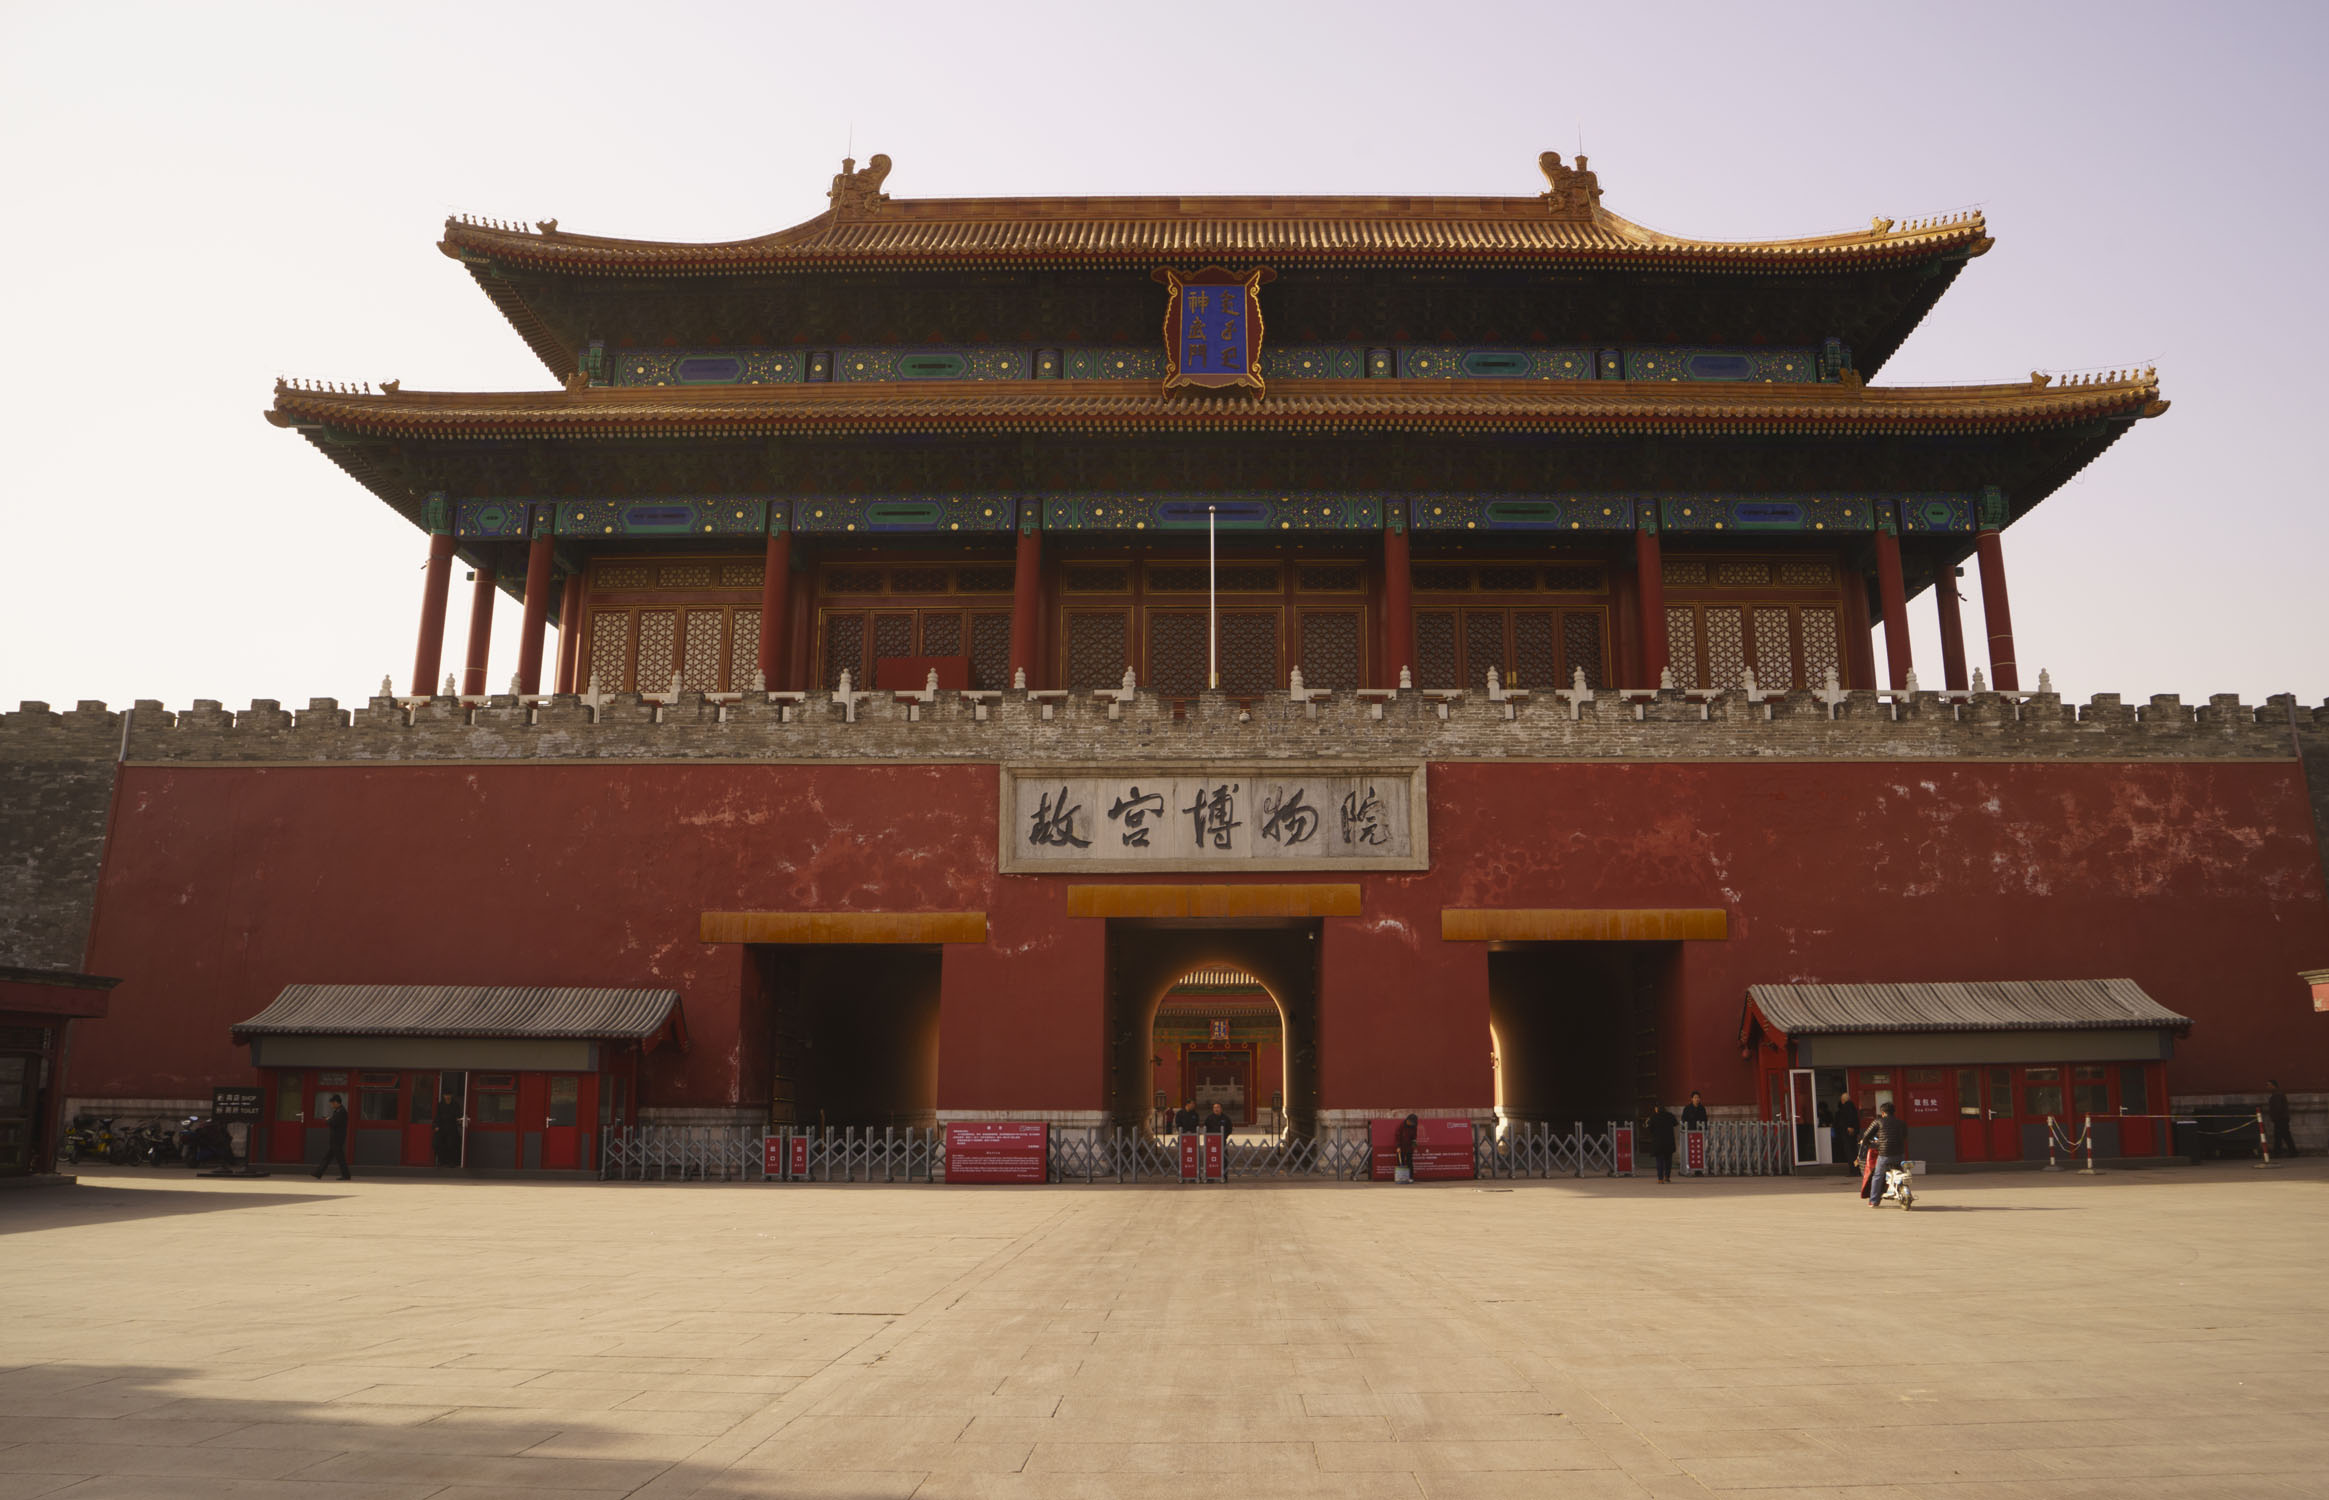 故宫是中国最大的古代文化艺术博物馆,大部分文物收藏主要来源于清代